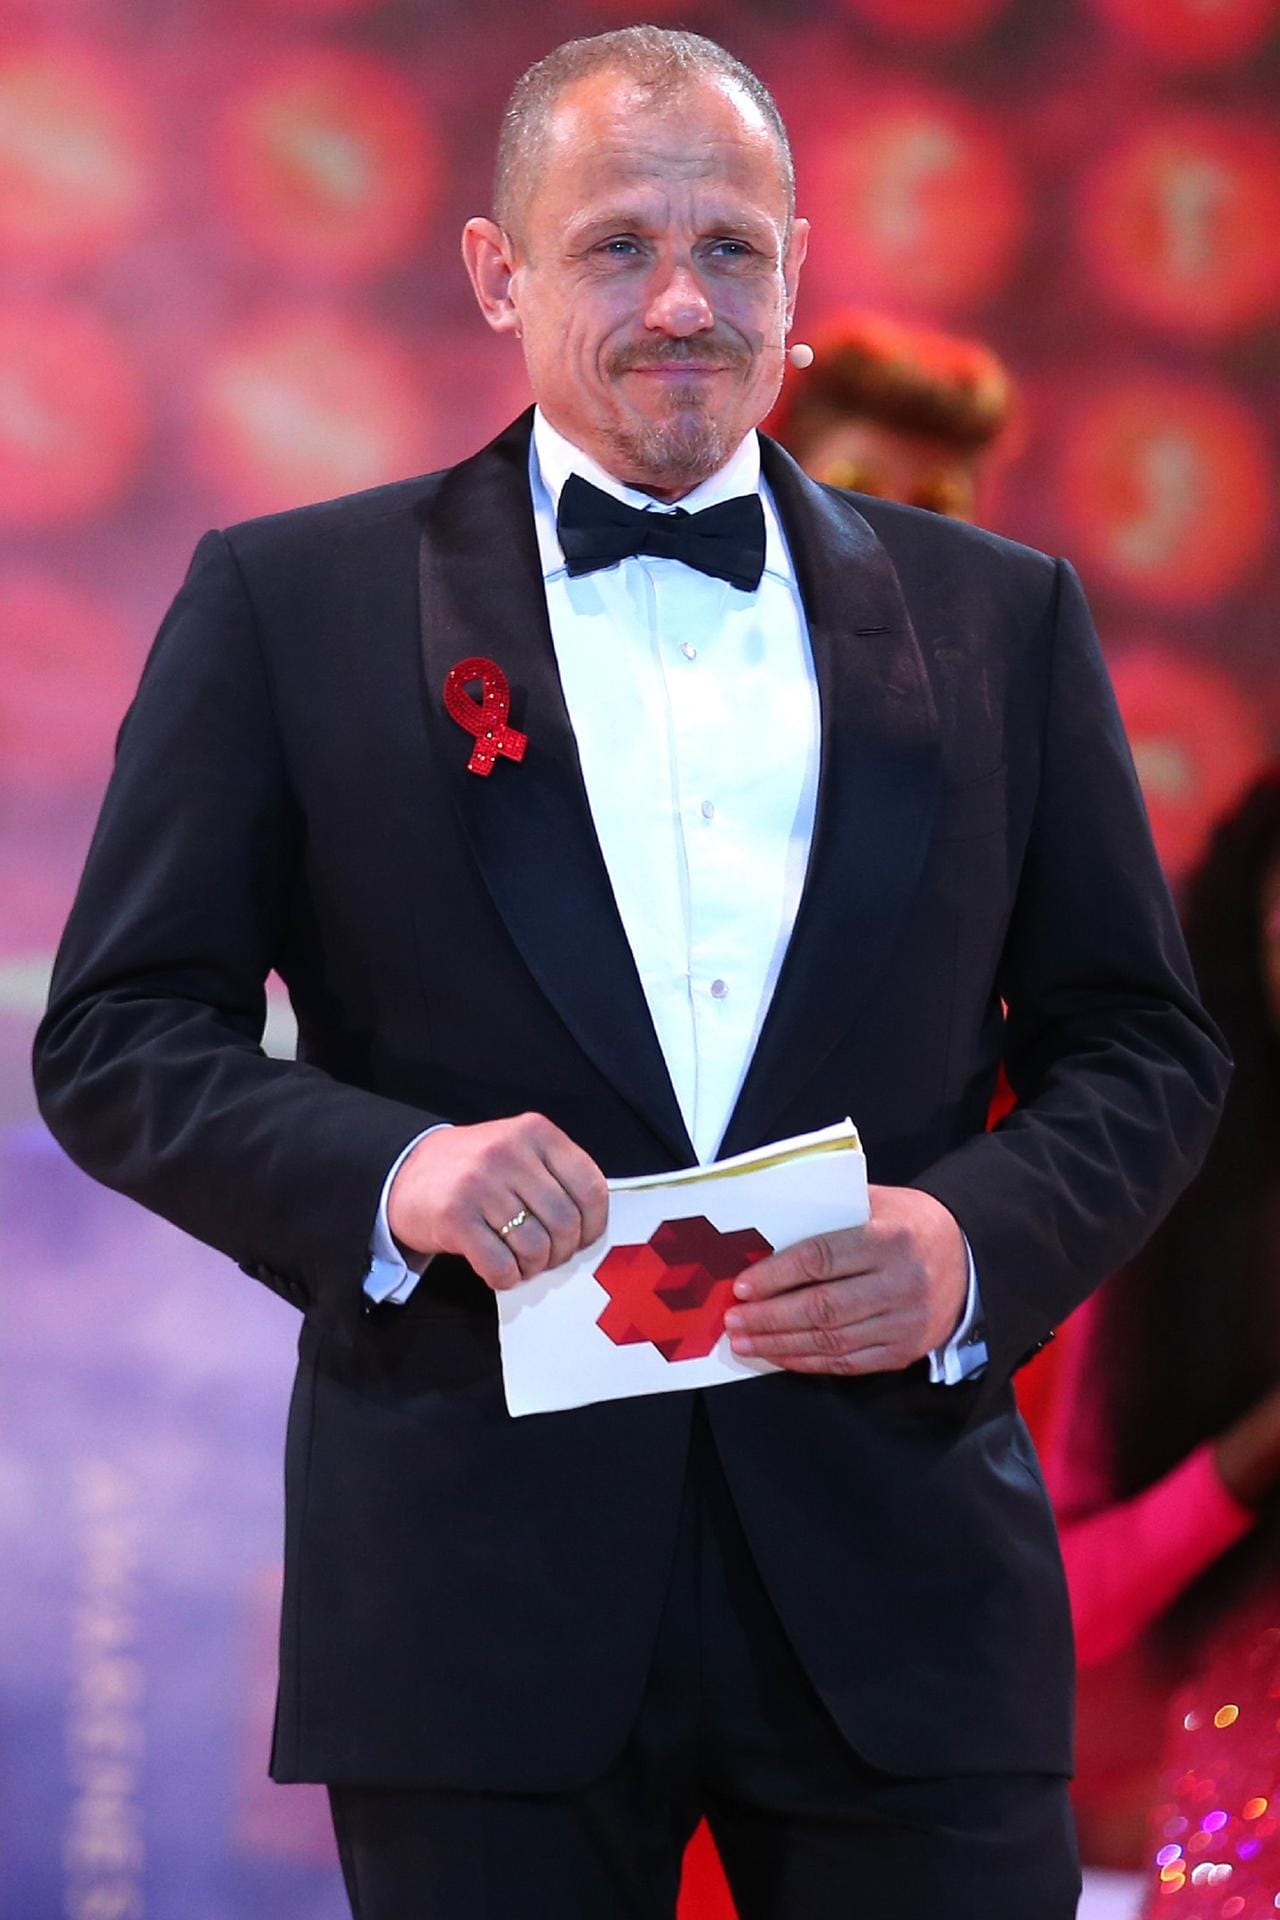 Gery Keszler: Er ist einer der Gründer des Life Balls, der weltgrößten Charity-Veranstaltung für HIV infizierte- und AIDS erkrankte Menschen. Bei der Eröffnung 2015 gestand er, sich mit HIV infiziert zu haben.